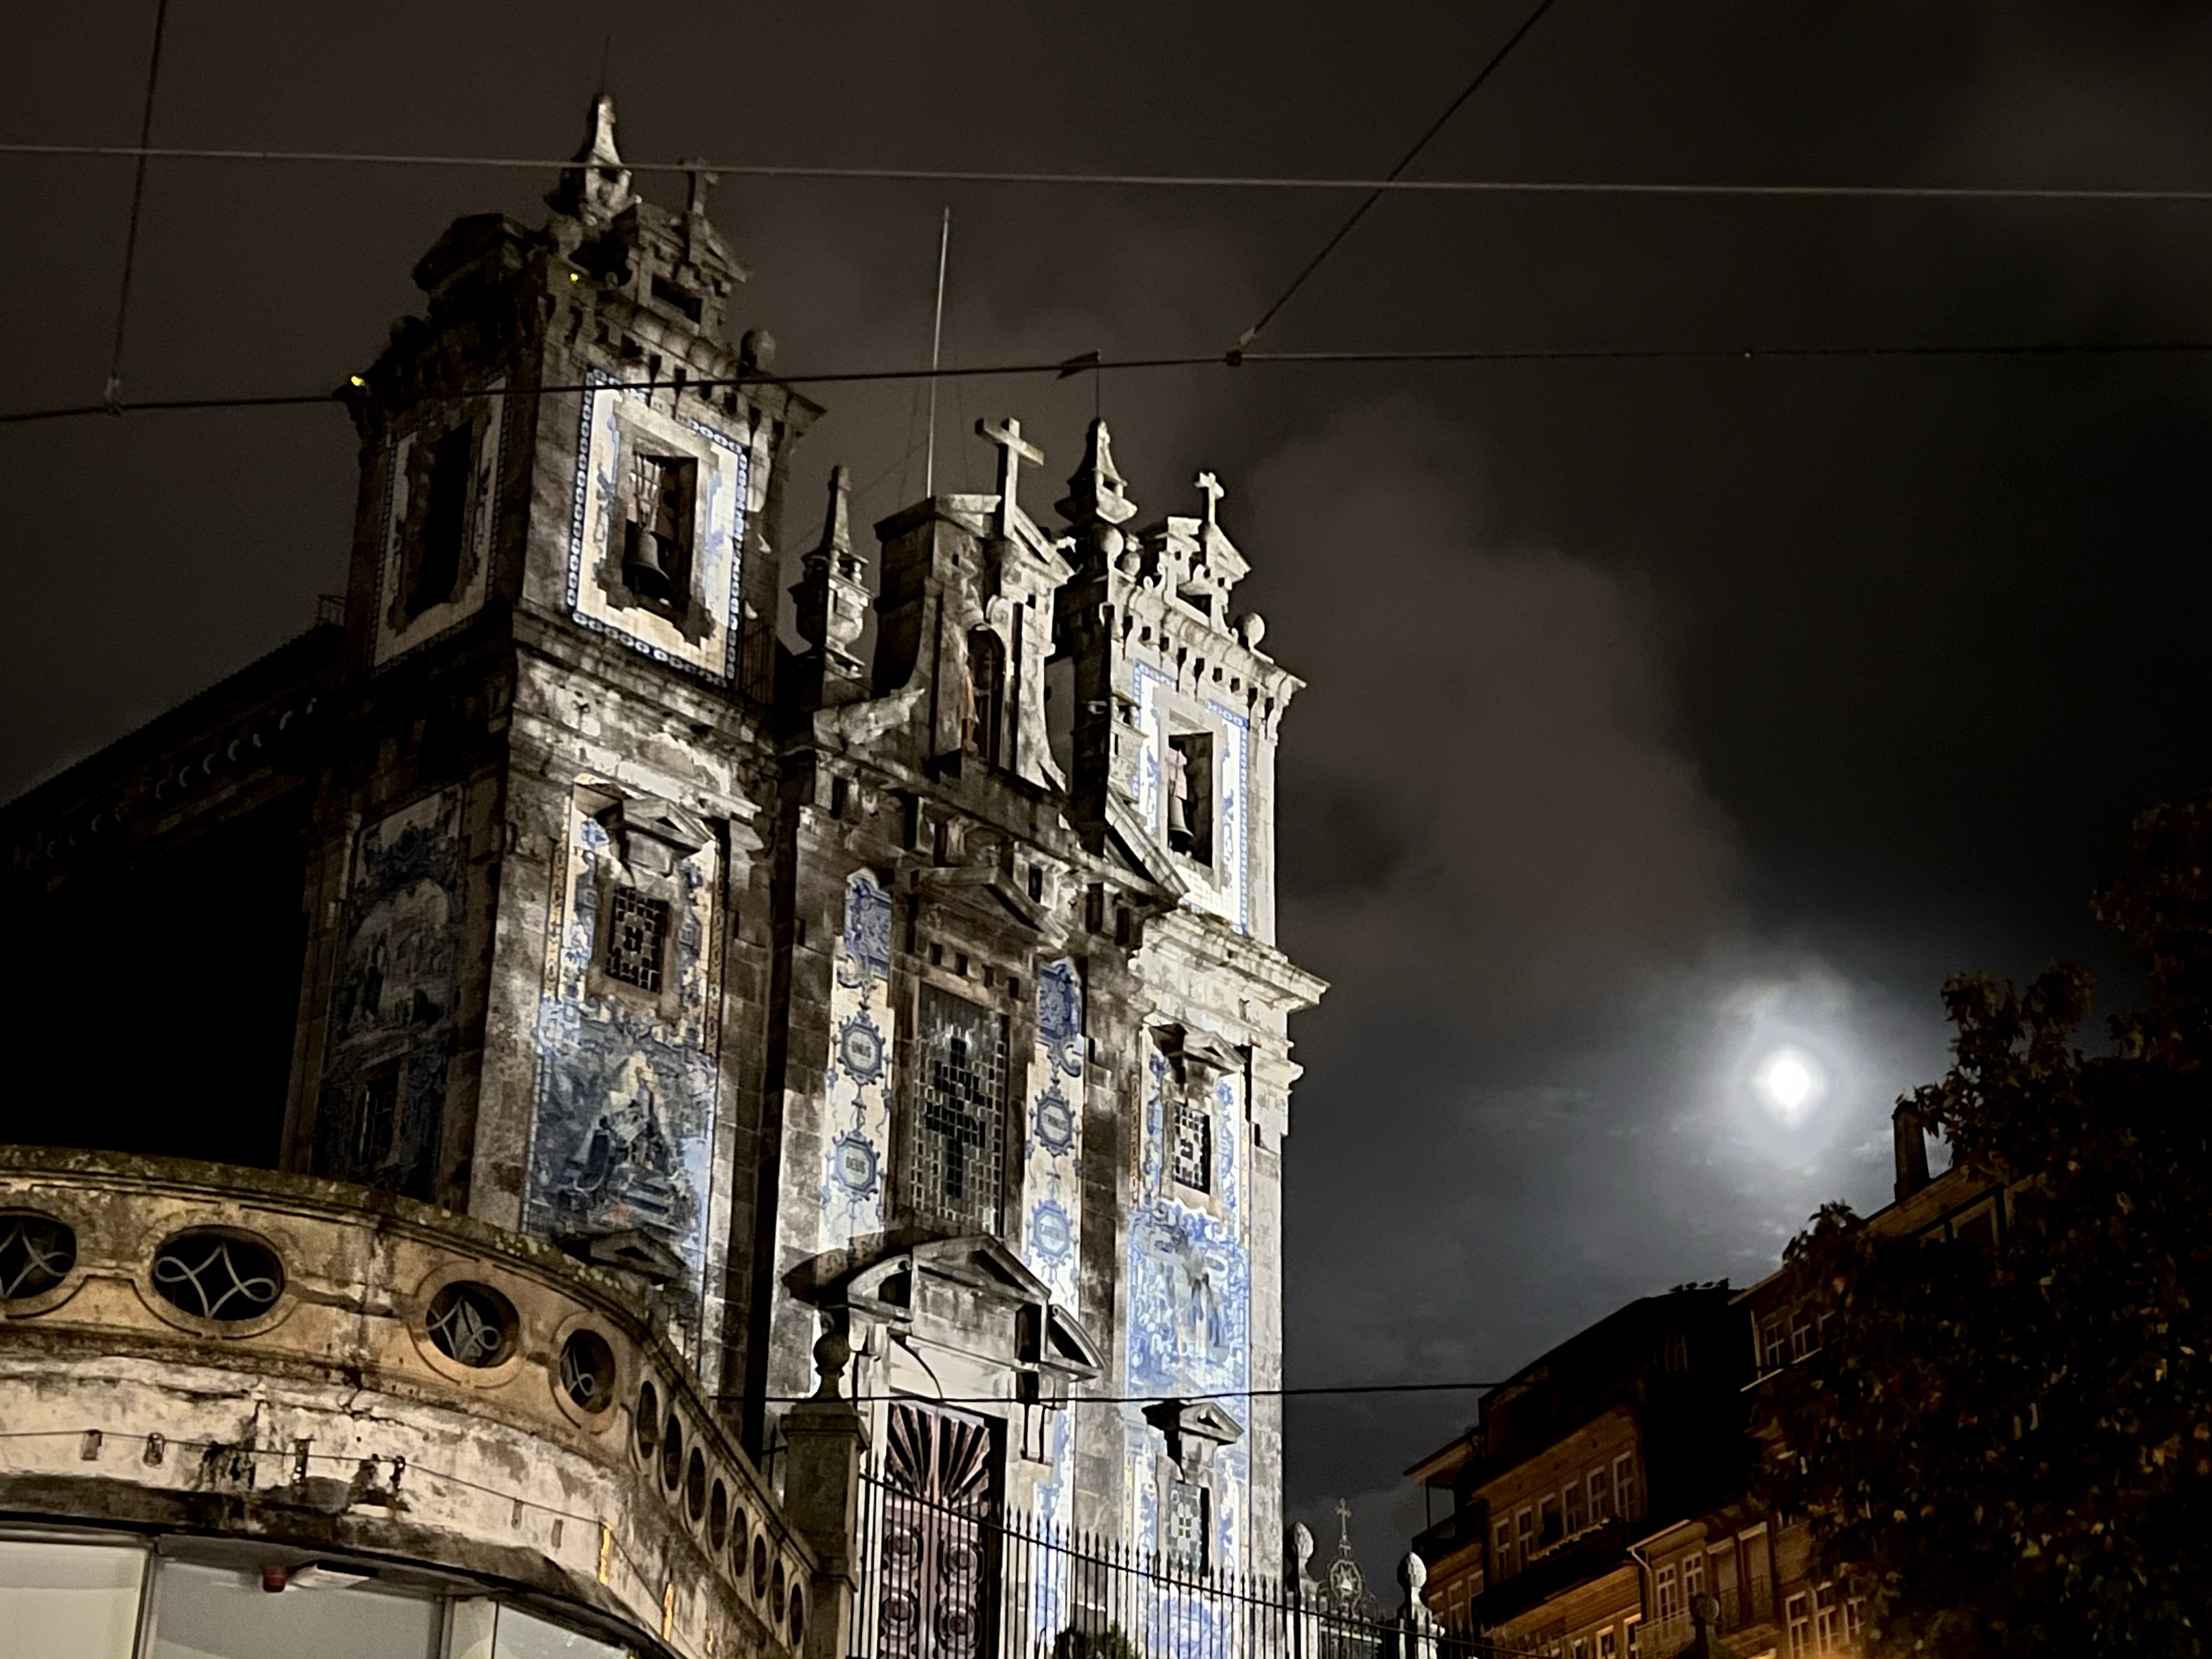 Night sky in Porto